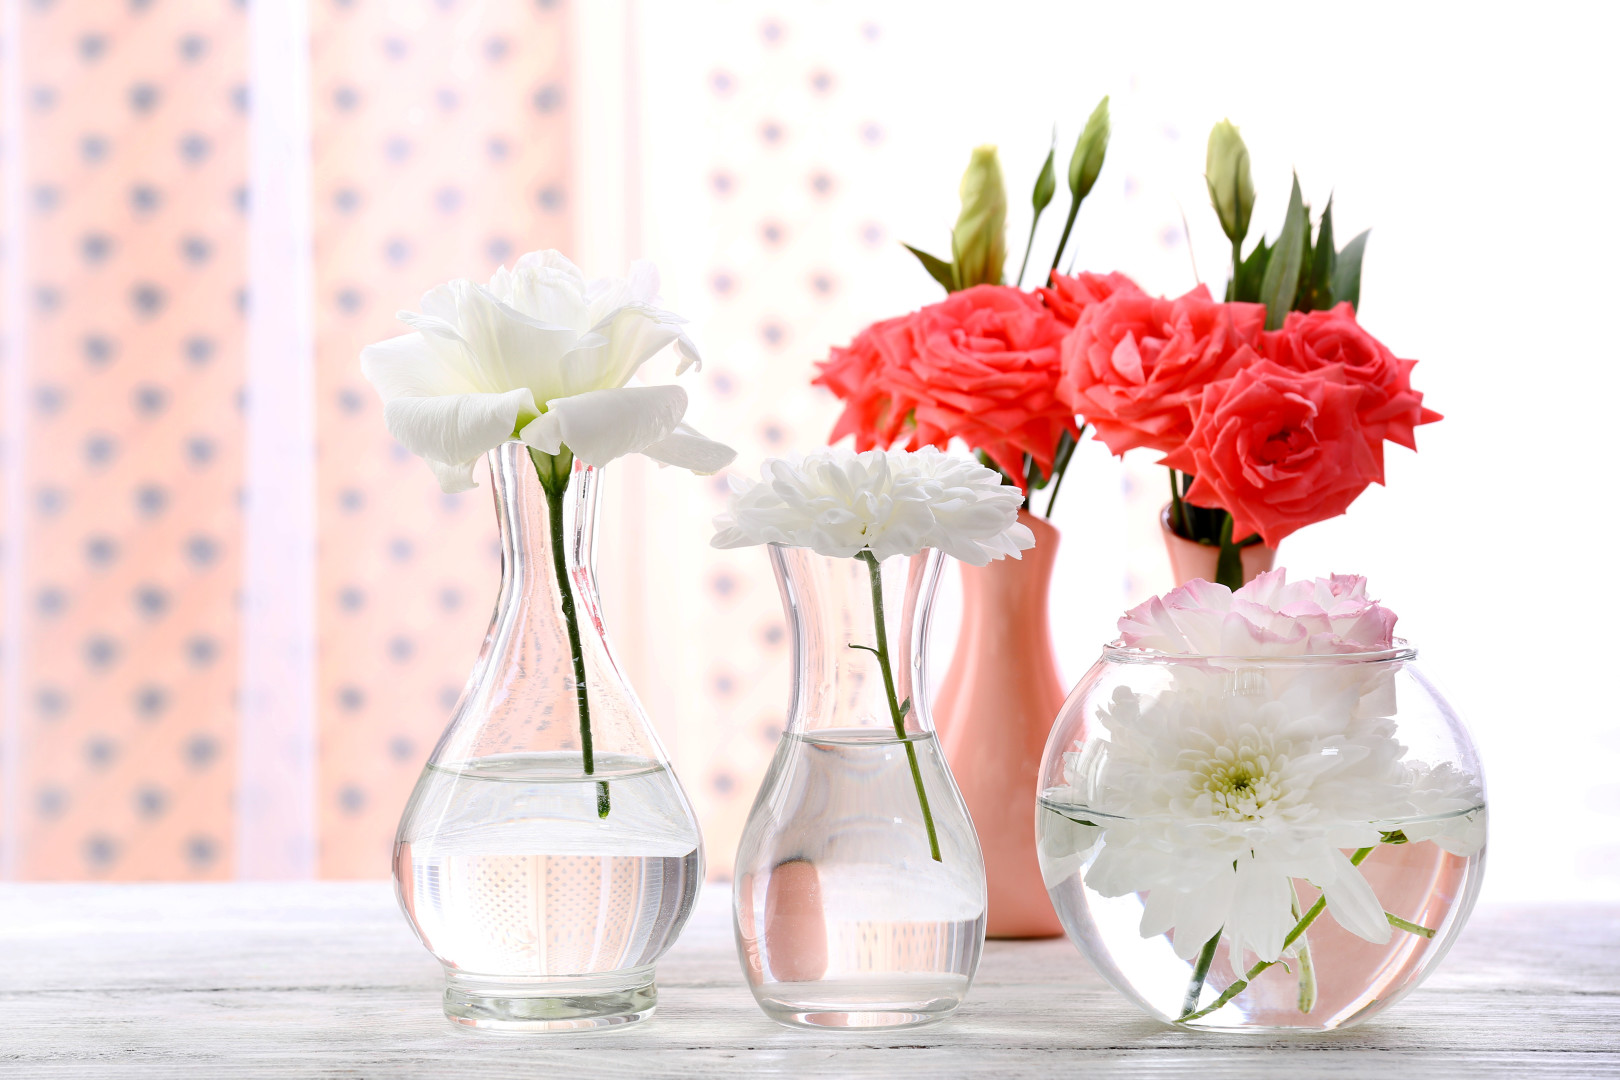 Welche Vasen passen zu welchen Blumen?